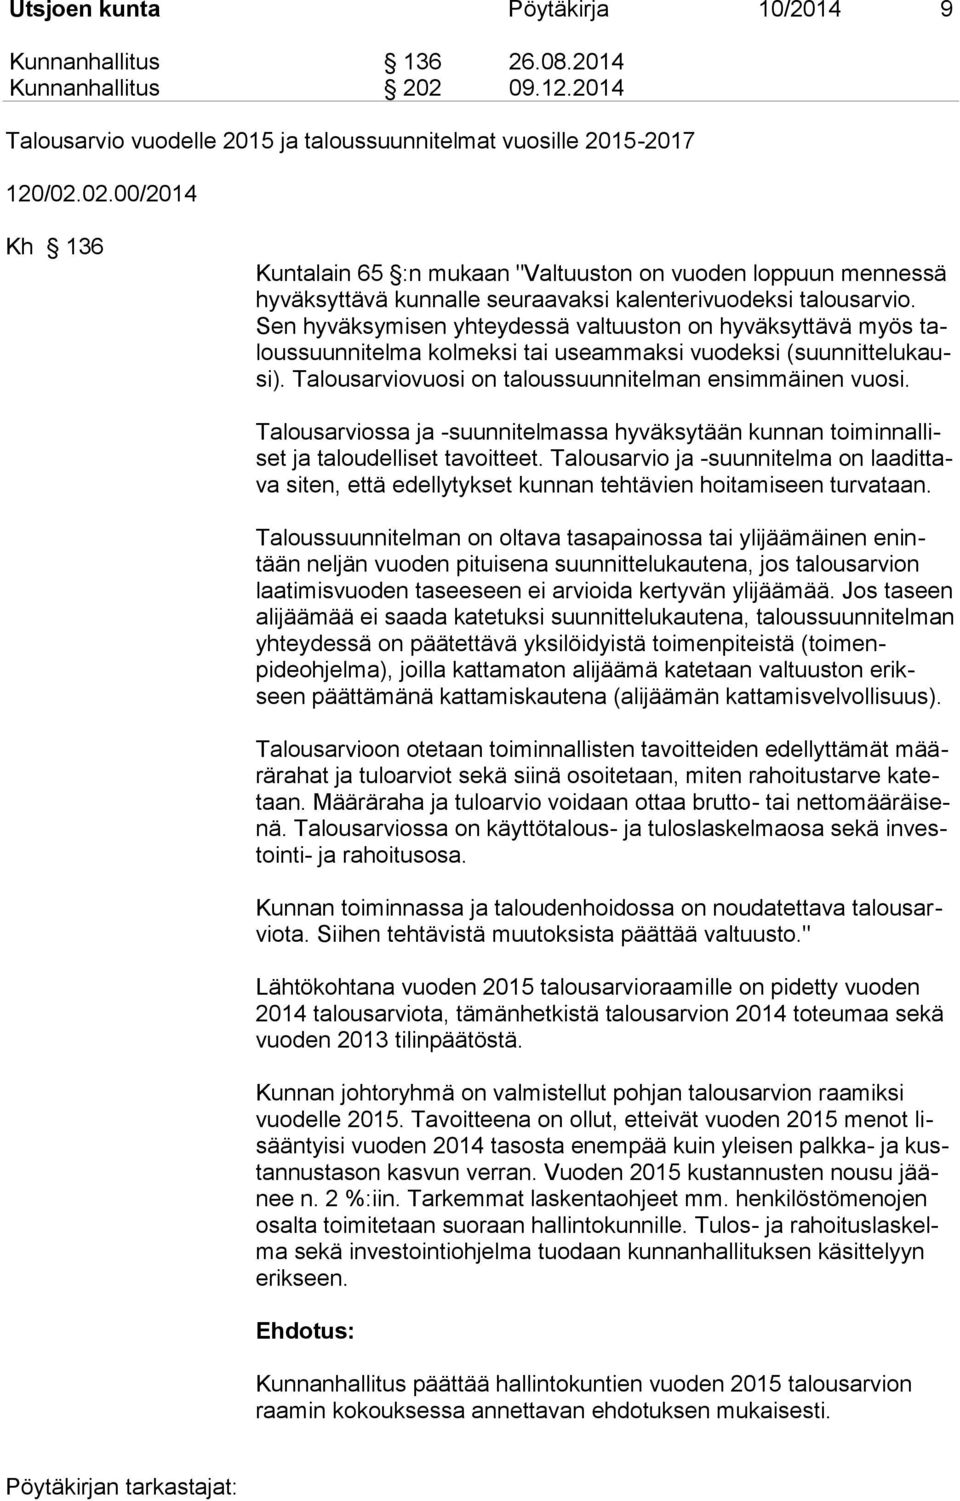 02.00/2014 Kh 136 Kuntalain 65 :n mukaan "Valtuuston on vuoden loppuun mennessä hyväksyttävä kunnalle seuraavaksi kalenterivuodeksi talousarvio.